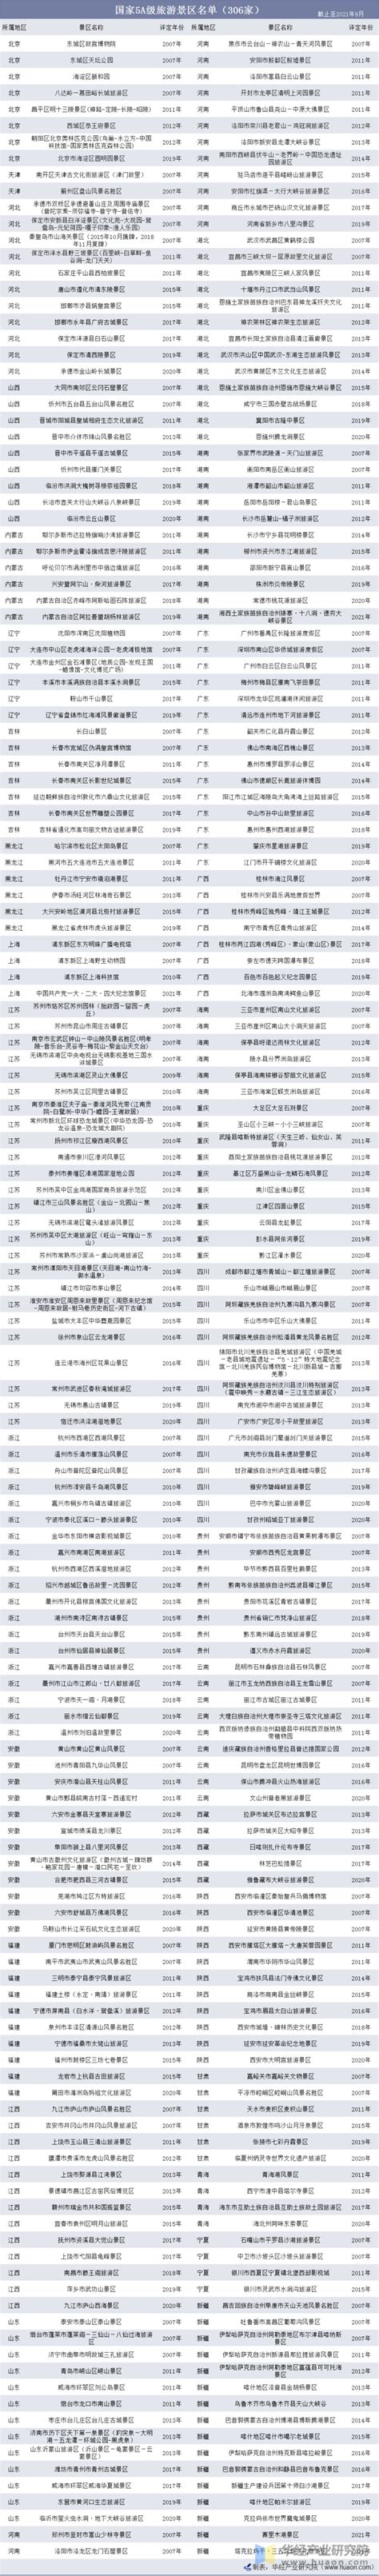 2021年中国5A级旅游景区名单及各地区景点分布数量统计_华经情报网_华经产业研究院